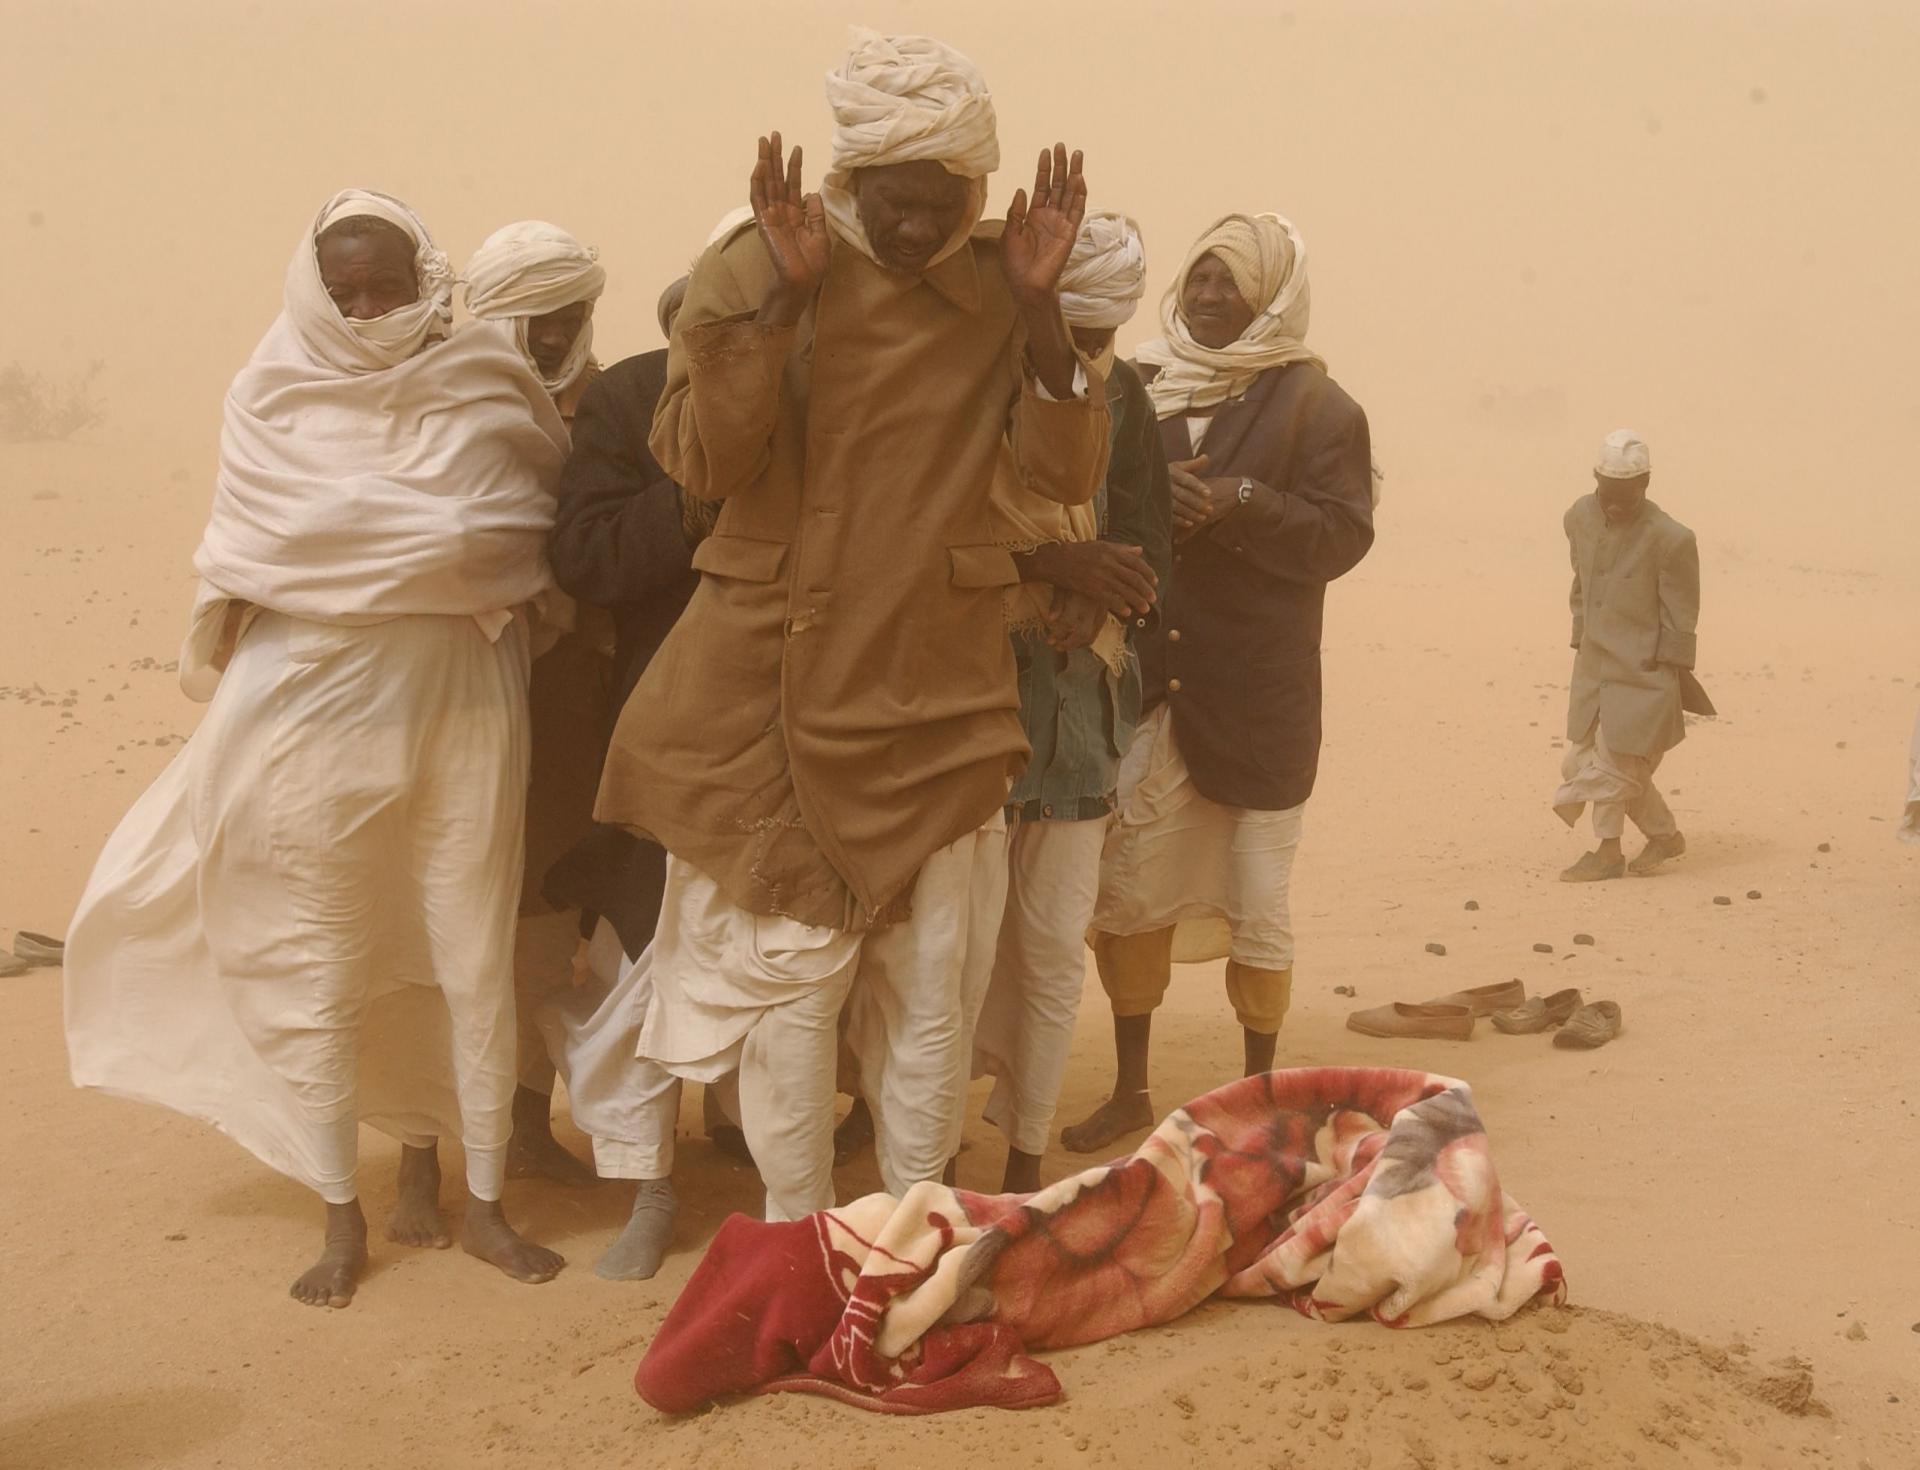 فرار لاجئ دارفور إلي تشاد بداية الحرب في الإقليم ، الصورة بالقرب من مدينة الطينة علي الحدود السودانية التشادية .